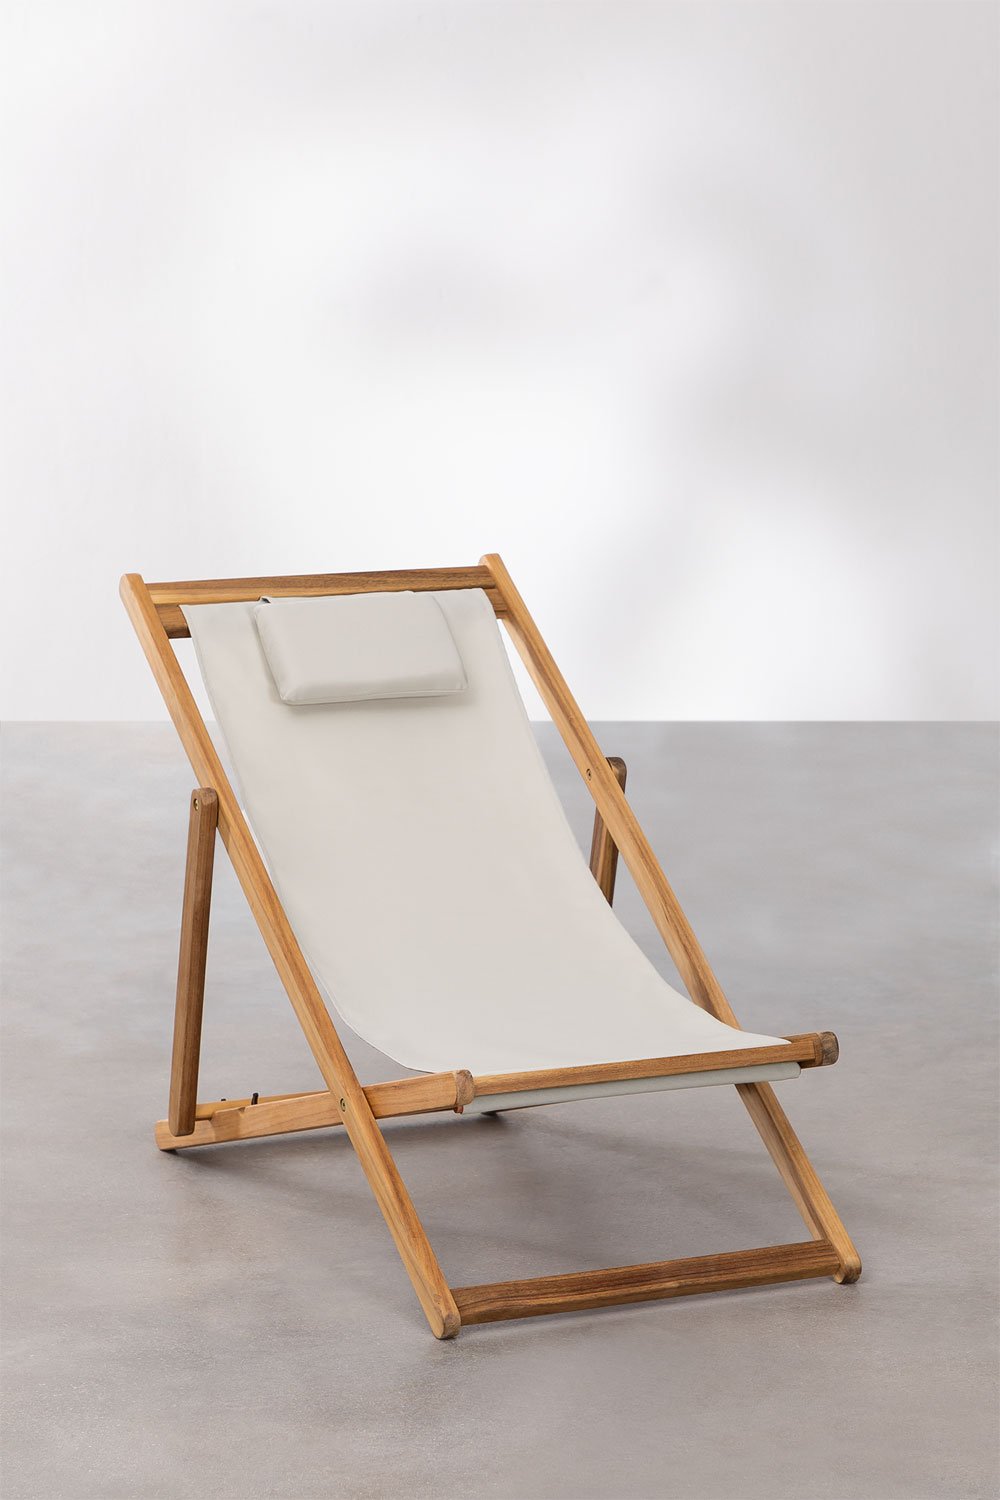 Houten inklapbare strandstoel met kussen Kards, galerij beeld 2